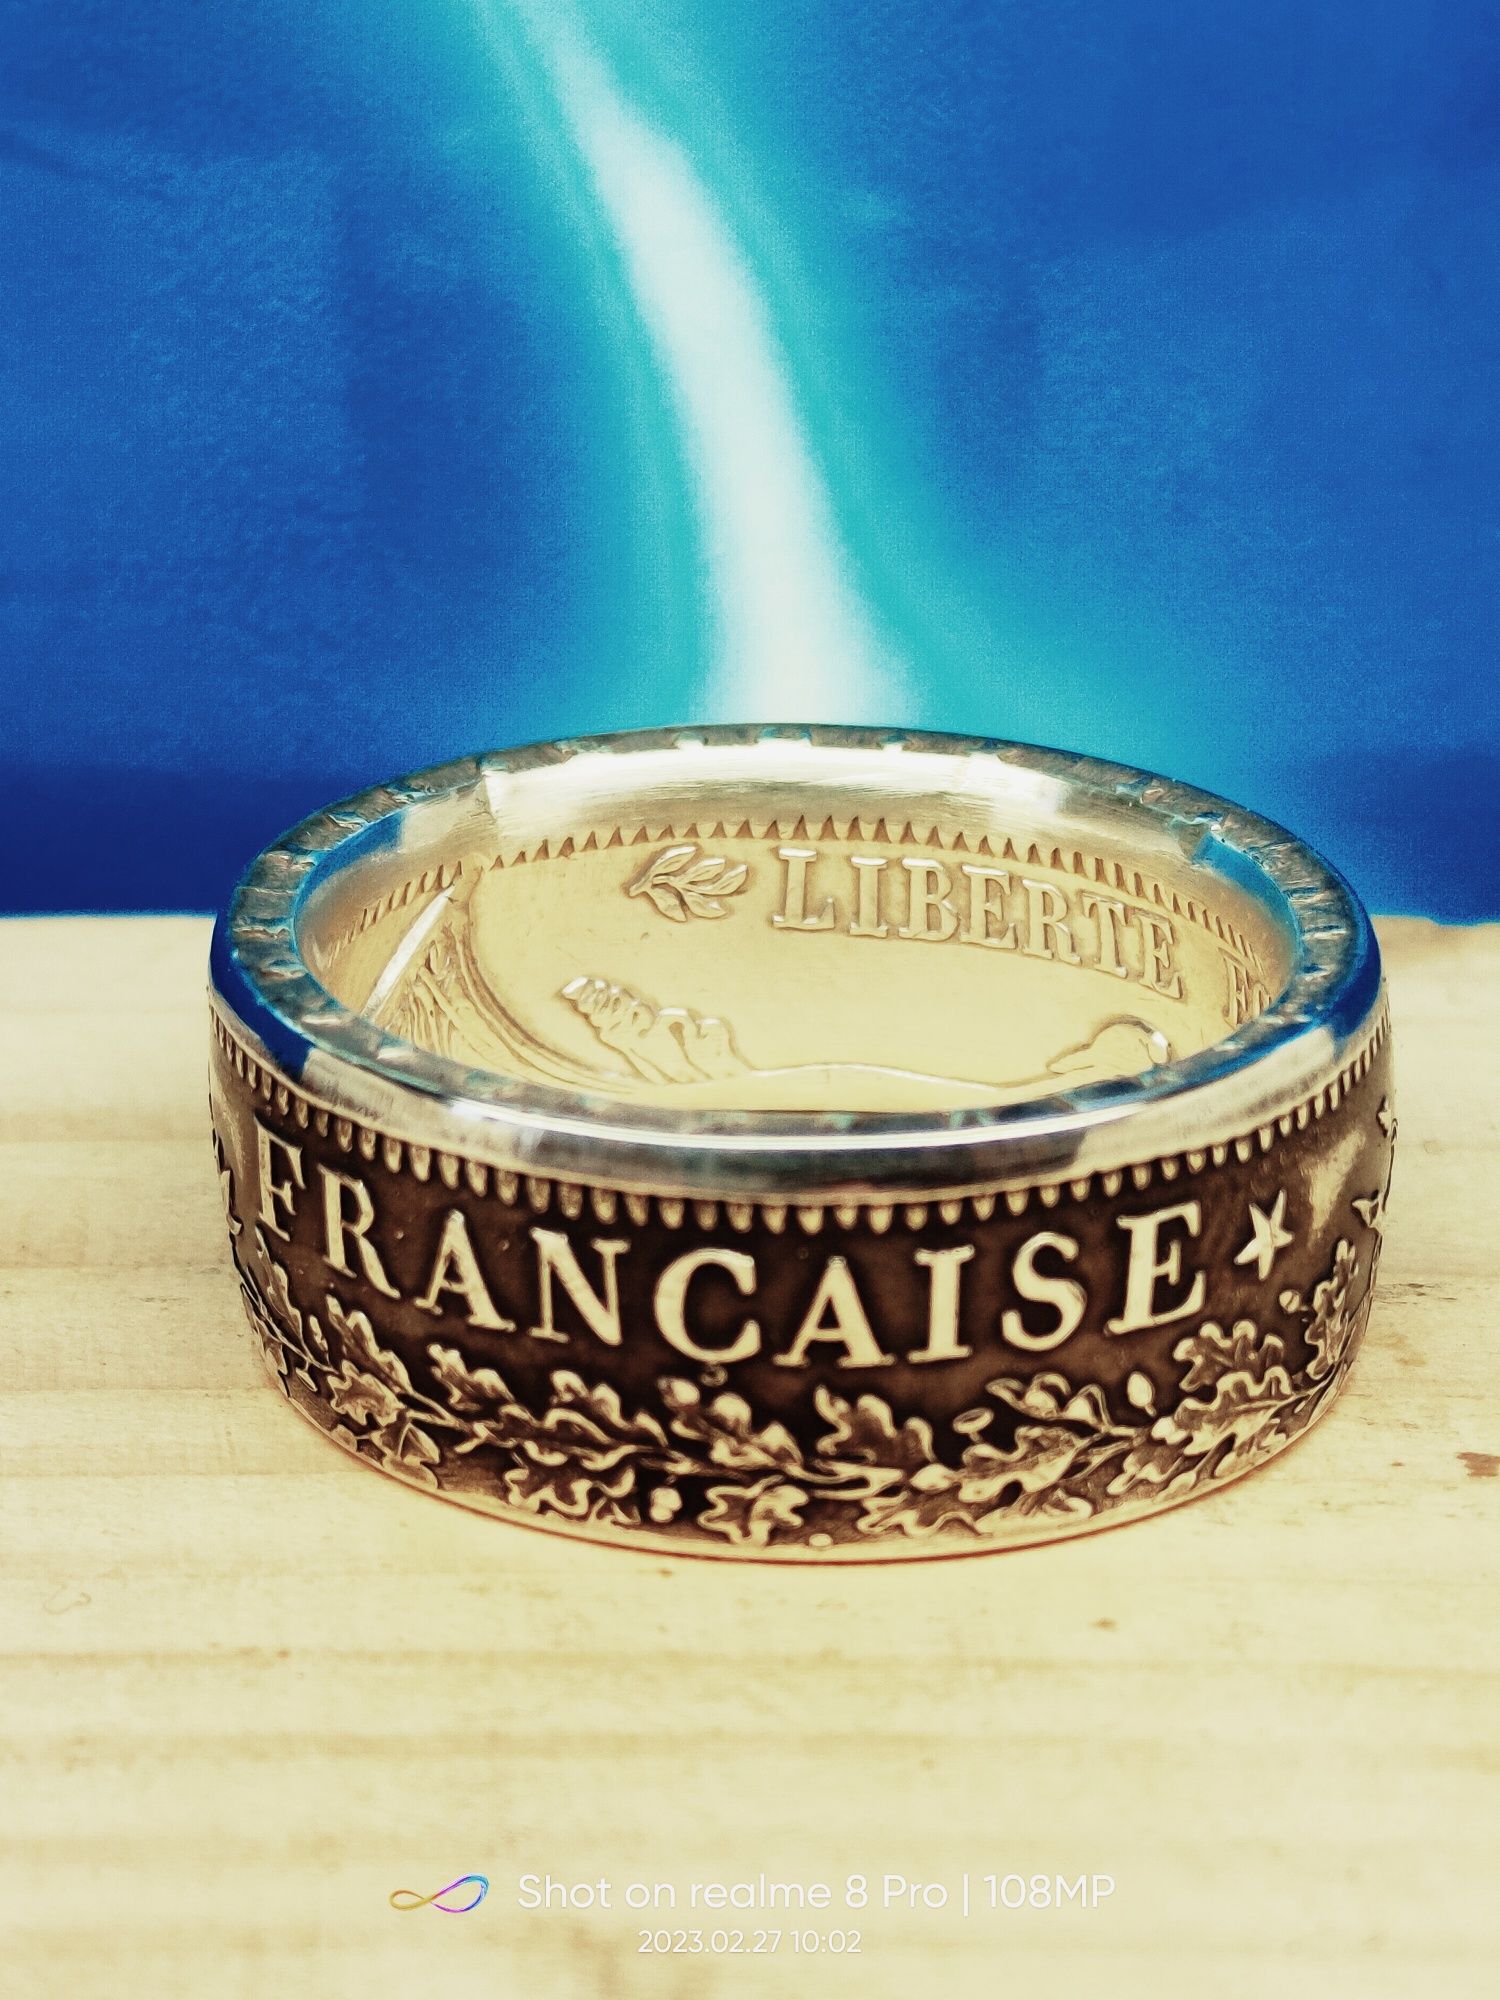 Pierścień srebrny 0,900 10 franków francuskich